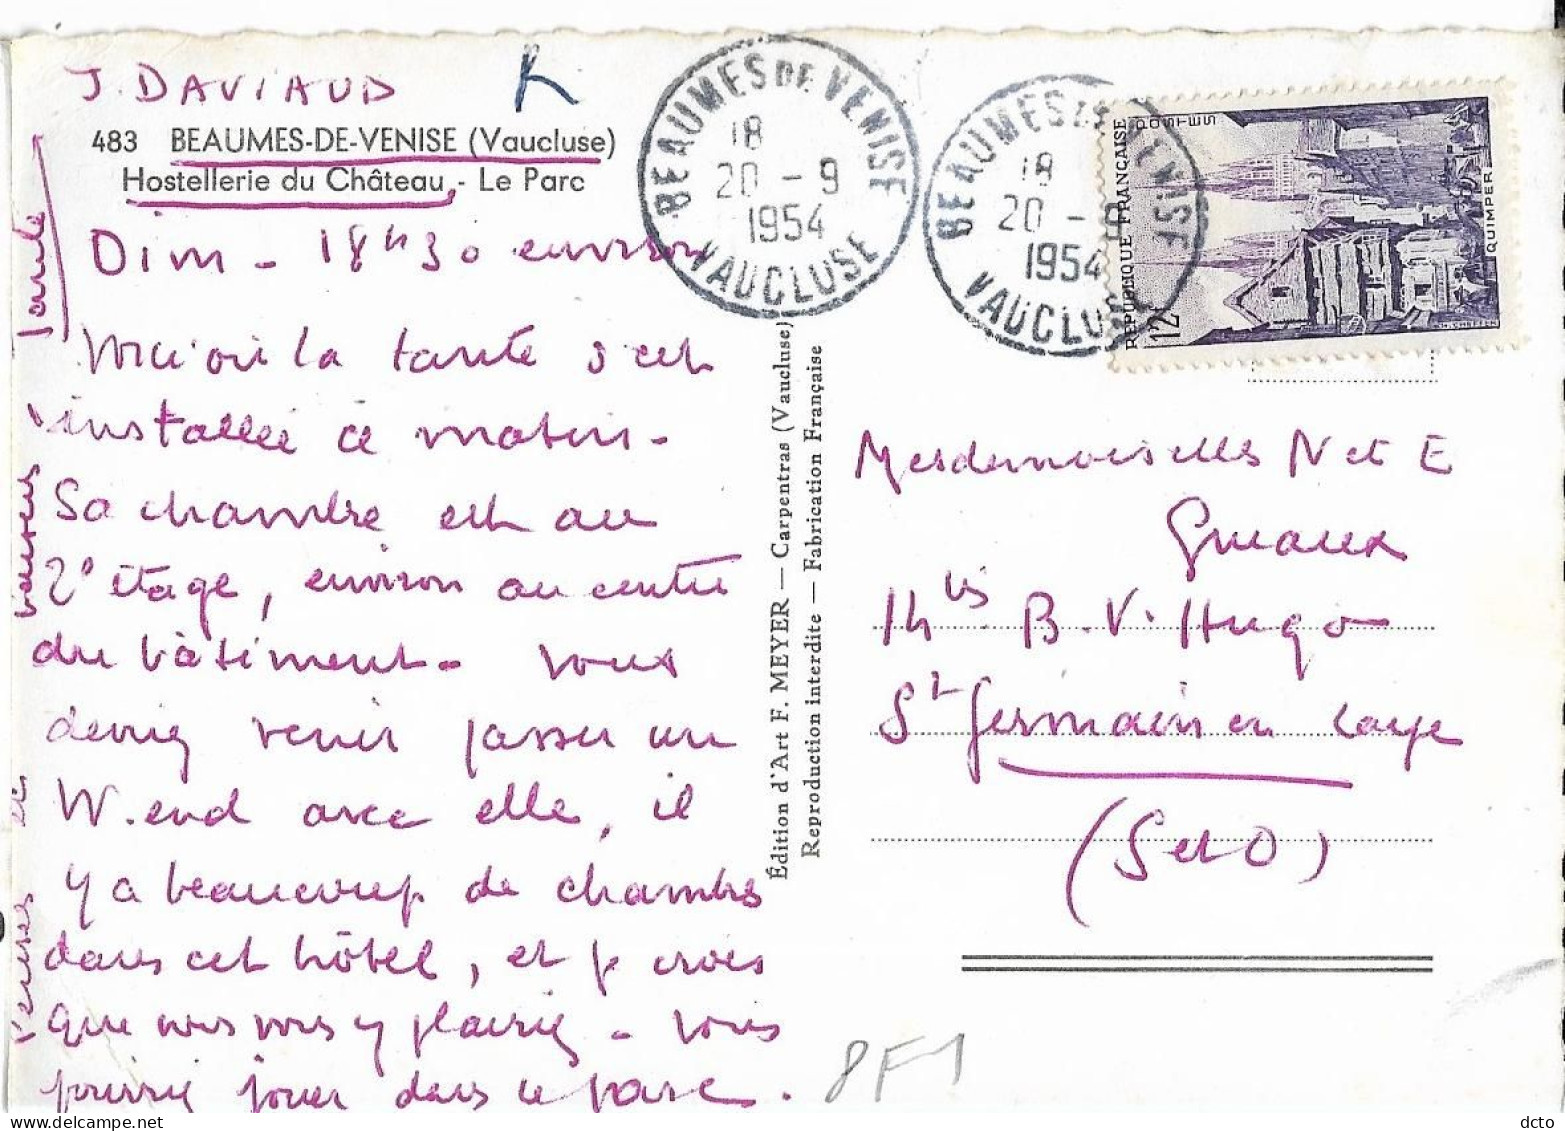 BEAUMES E VENISE (84) Hostellerie Du Château. Parc, Ed. Junon Meyer 483, Cpsm GF, 1954 - Beaumes De Venise